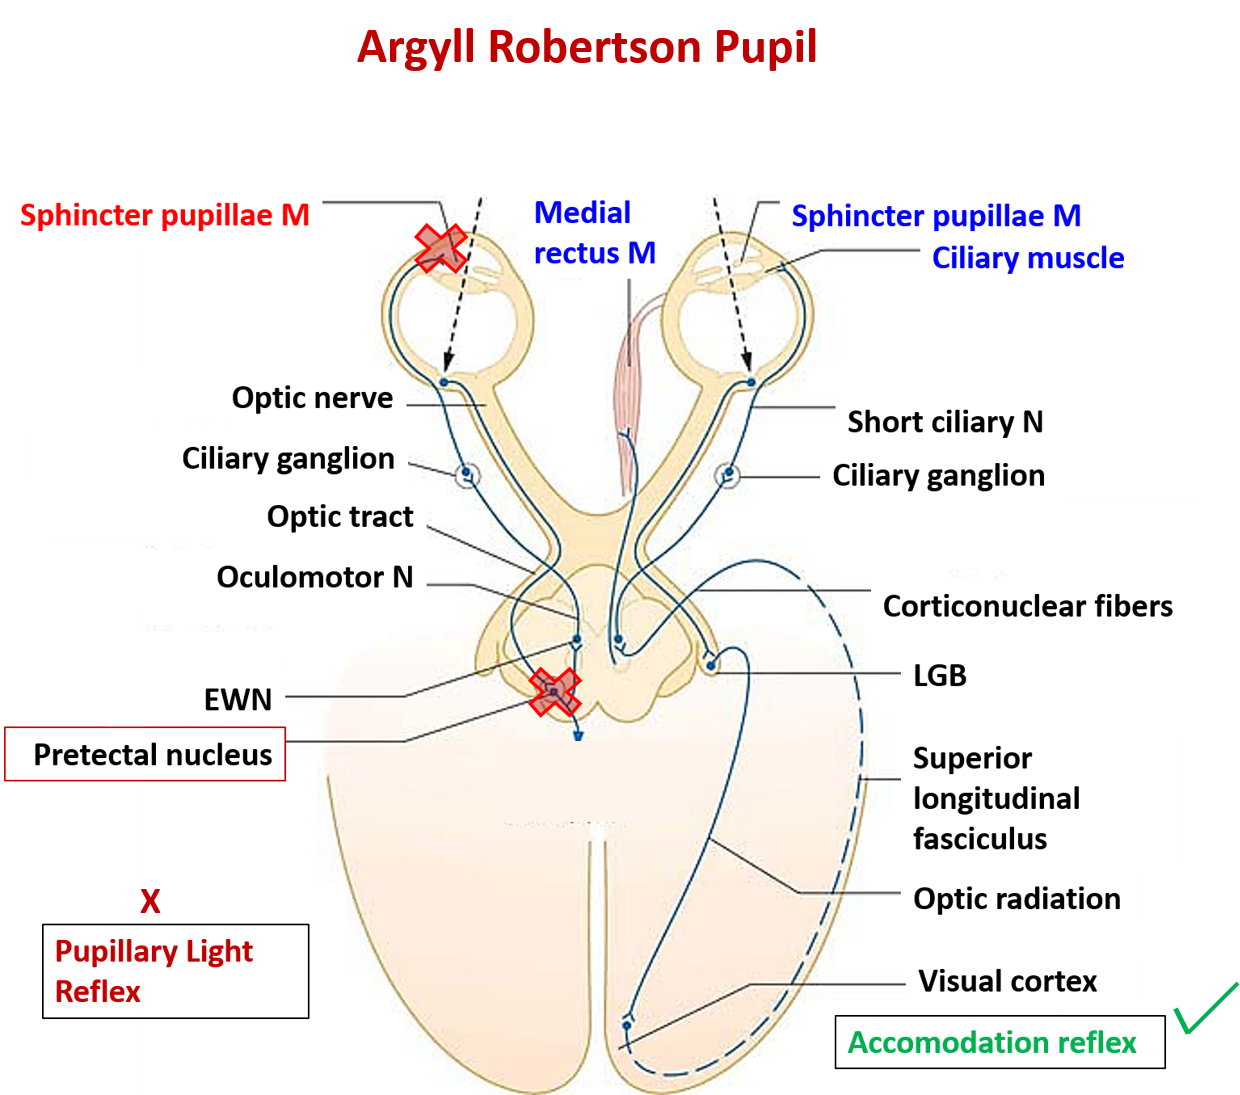 Midbrain anatomy - Argyll robertson pupil